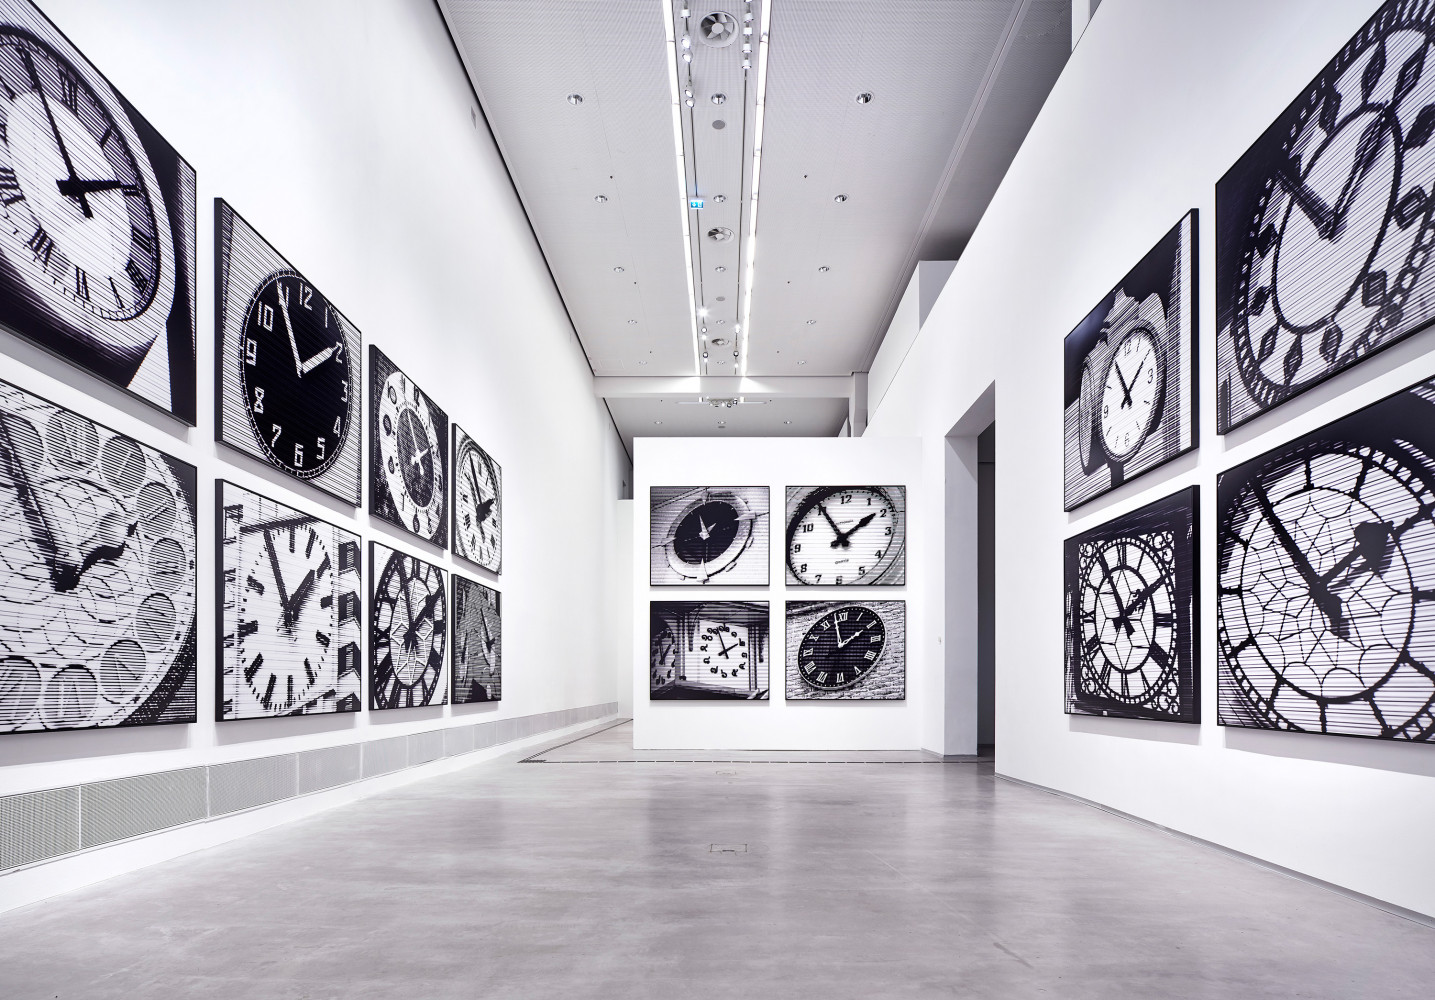 Bettina Pousttchi, ‘In Recent Years, Berlinische Galerie – Museum for Modern Art Berlin’, Installationsansicht, 2019